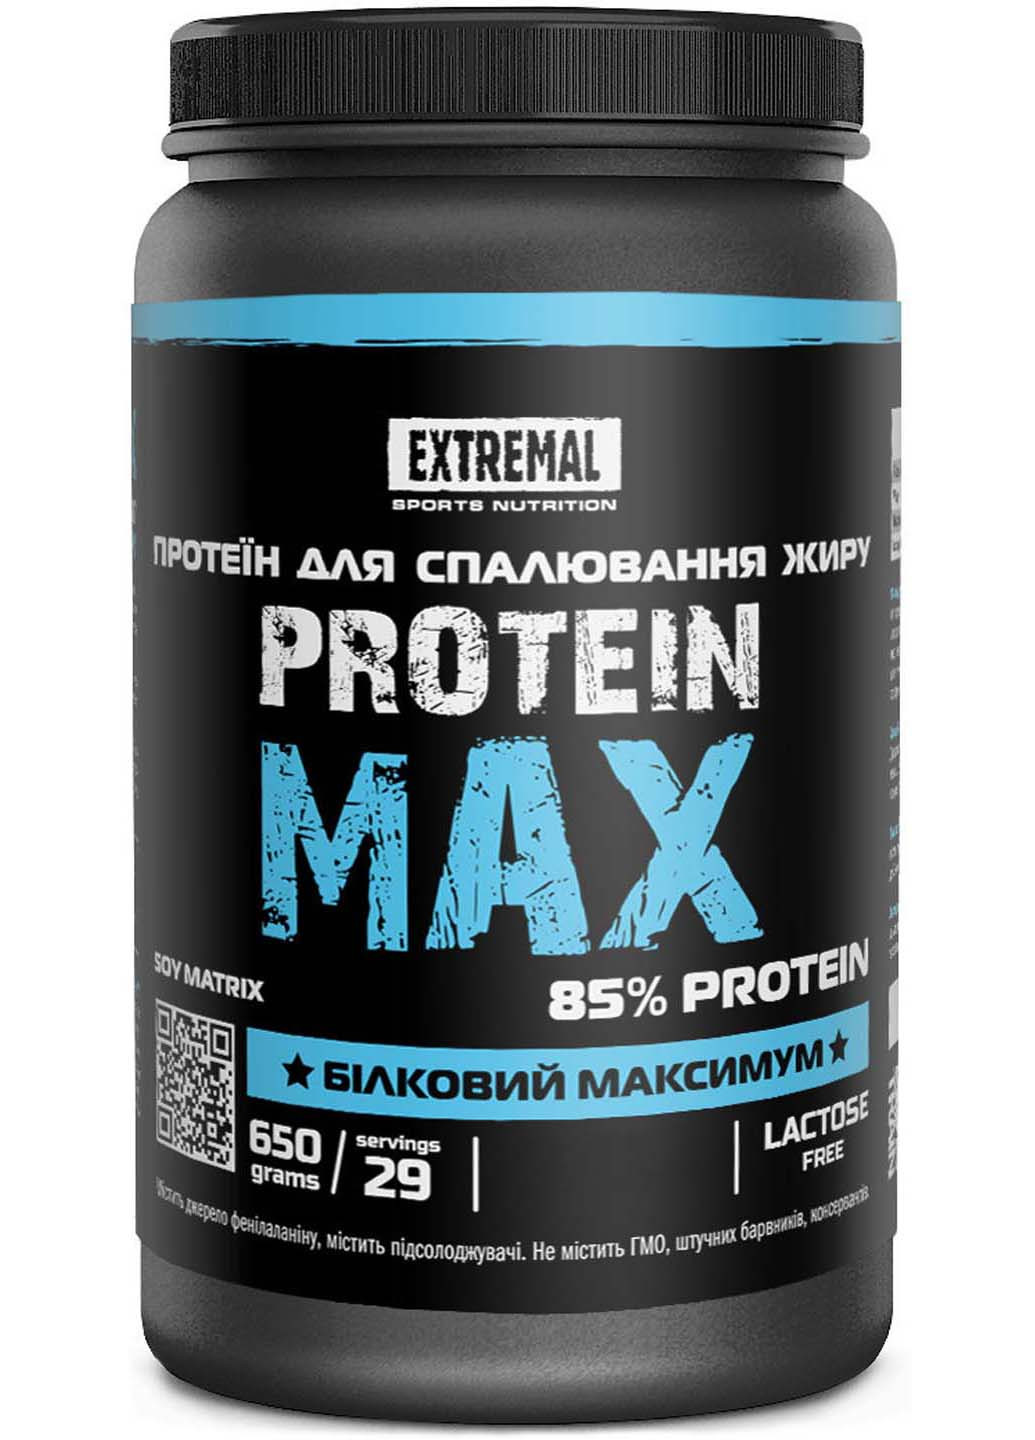 Соевый Протеин Изолят для похудения 650 г тирамису десерт Protein max для сжигания жира Extremal (254070174)